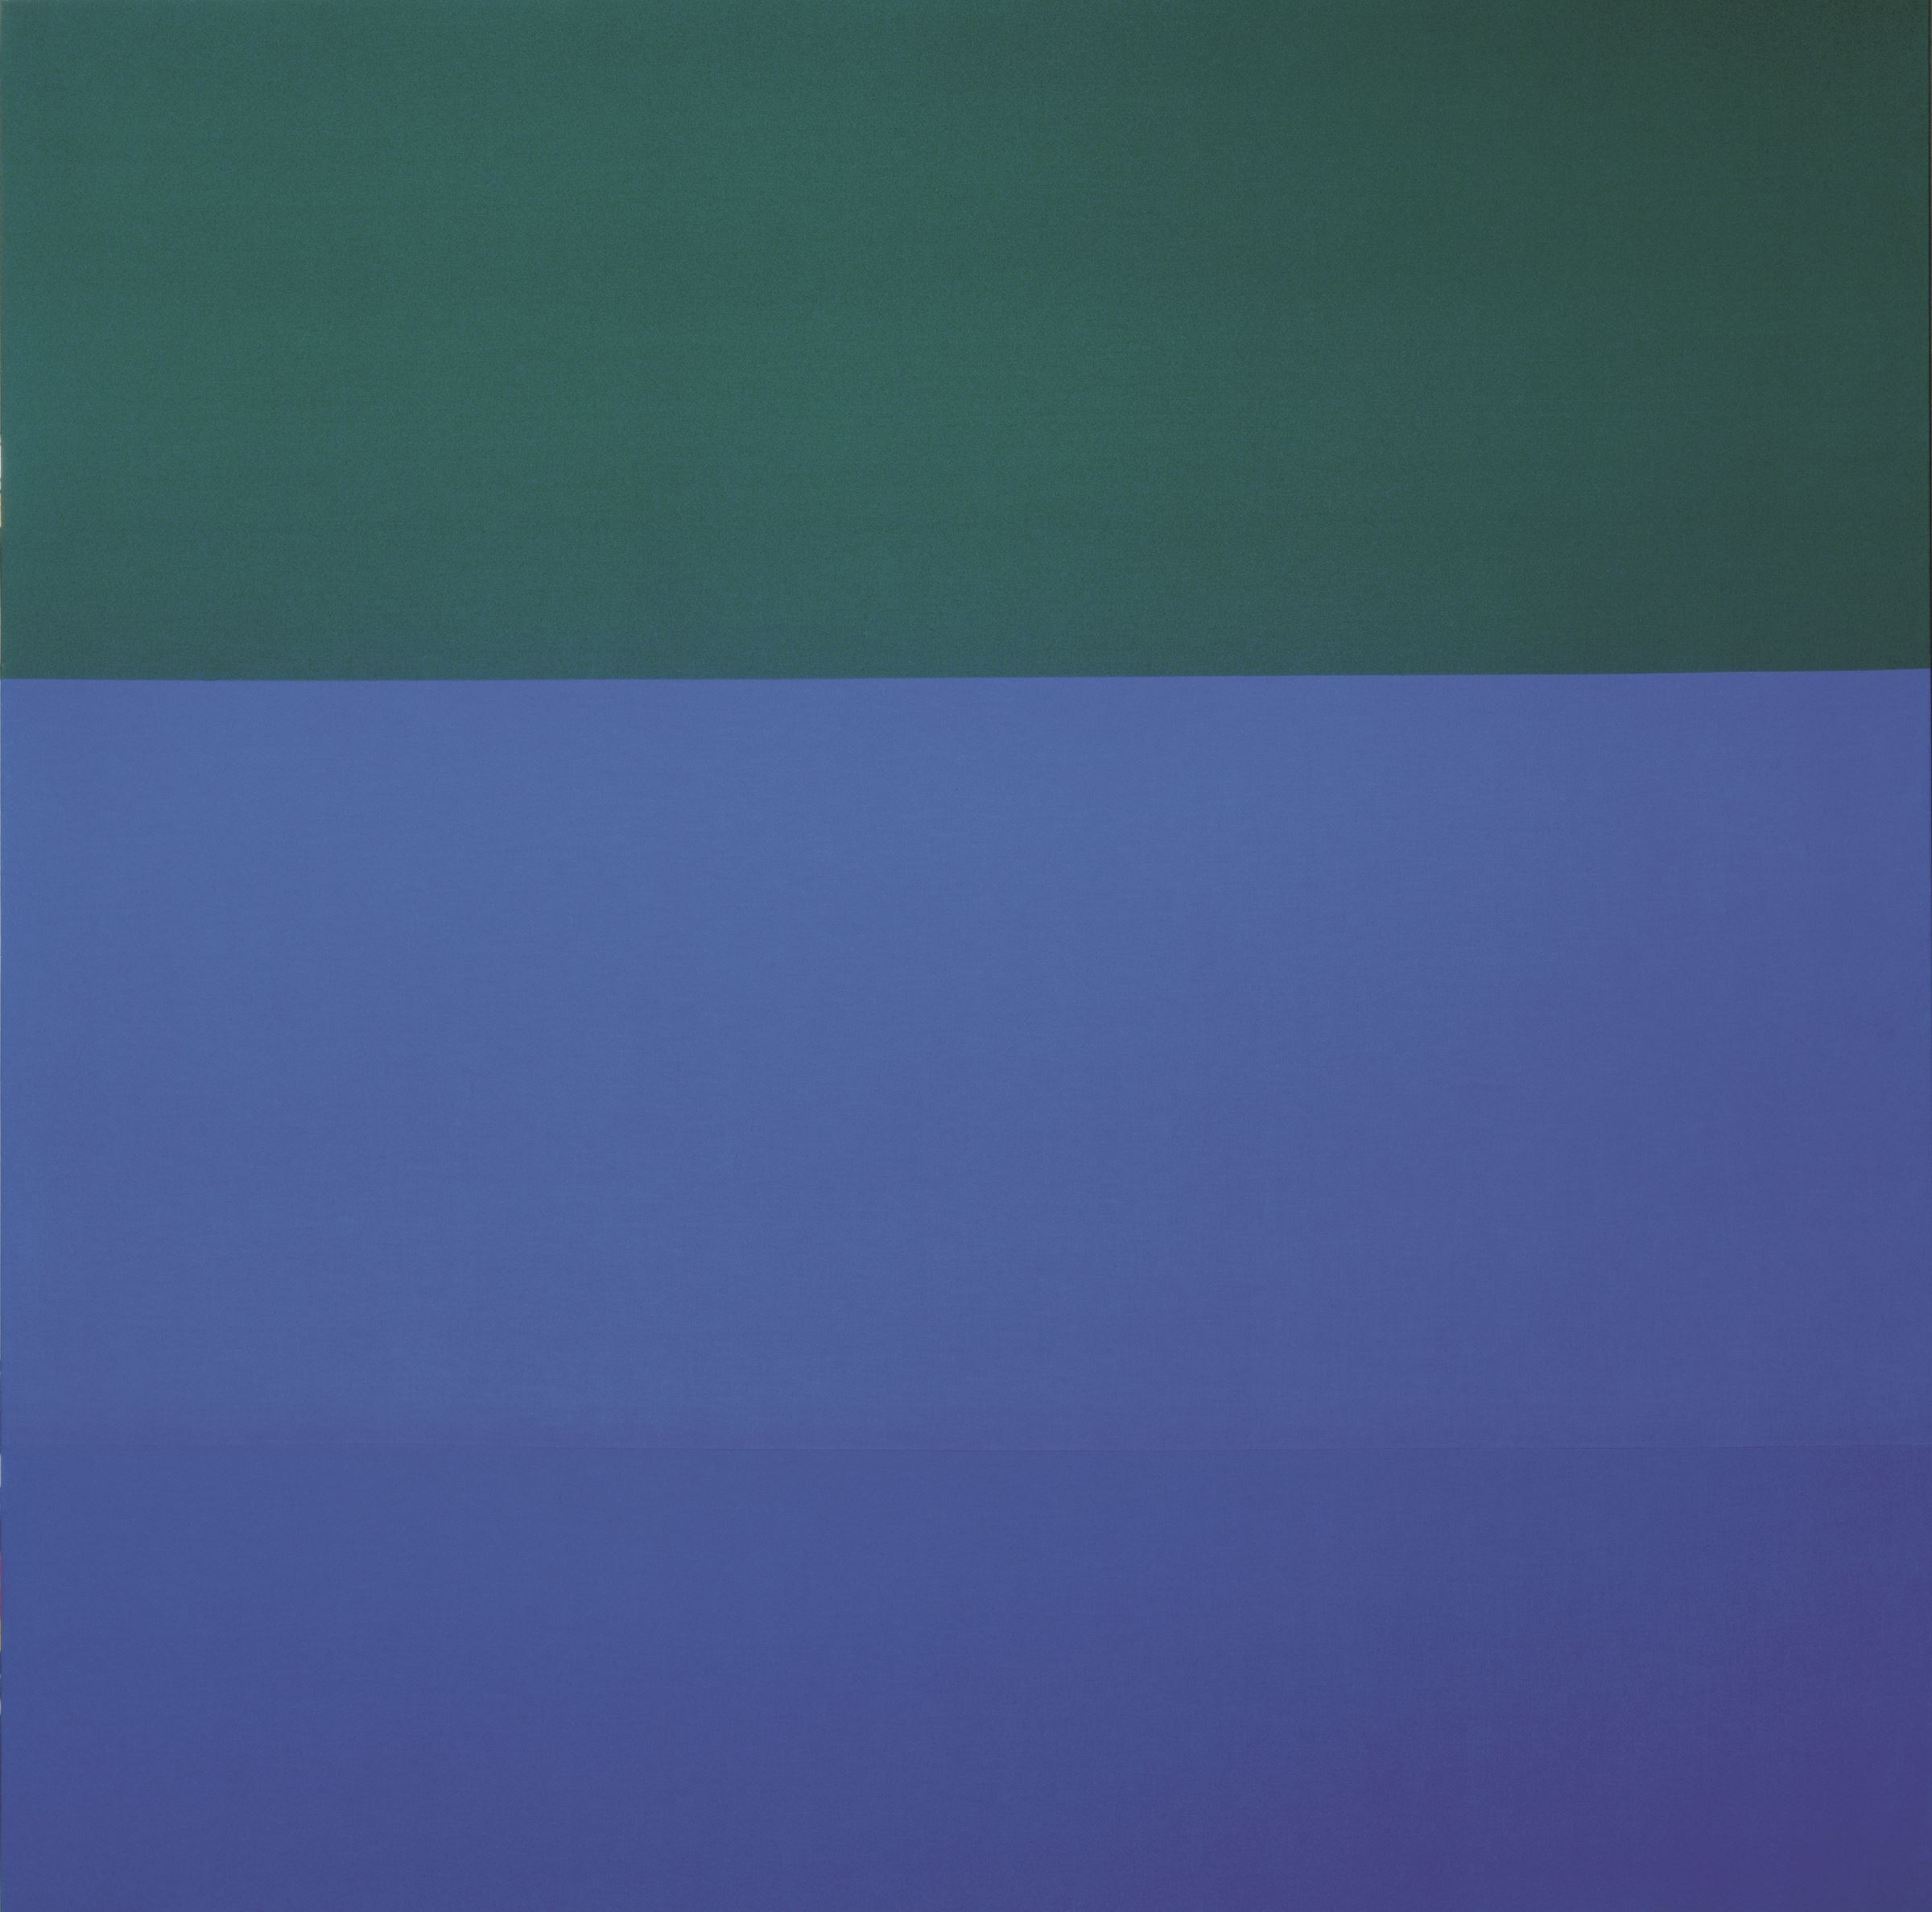 ブリンキー・パレルモ《無題（布絵画：緑／青）》1969 クンストパラスト美術館、デュッセルドルフ (C)Kunstpalast – ARTOTHEK　VG Bild-Kunst, Bonn & JASPAR, Tokyo, 2021 E4244